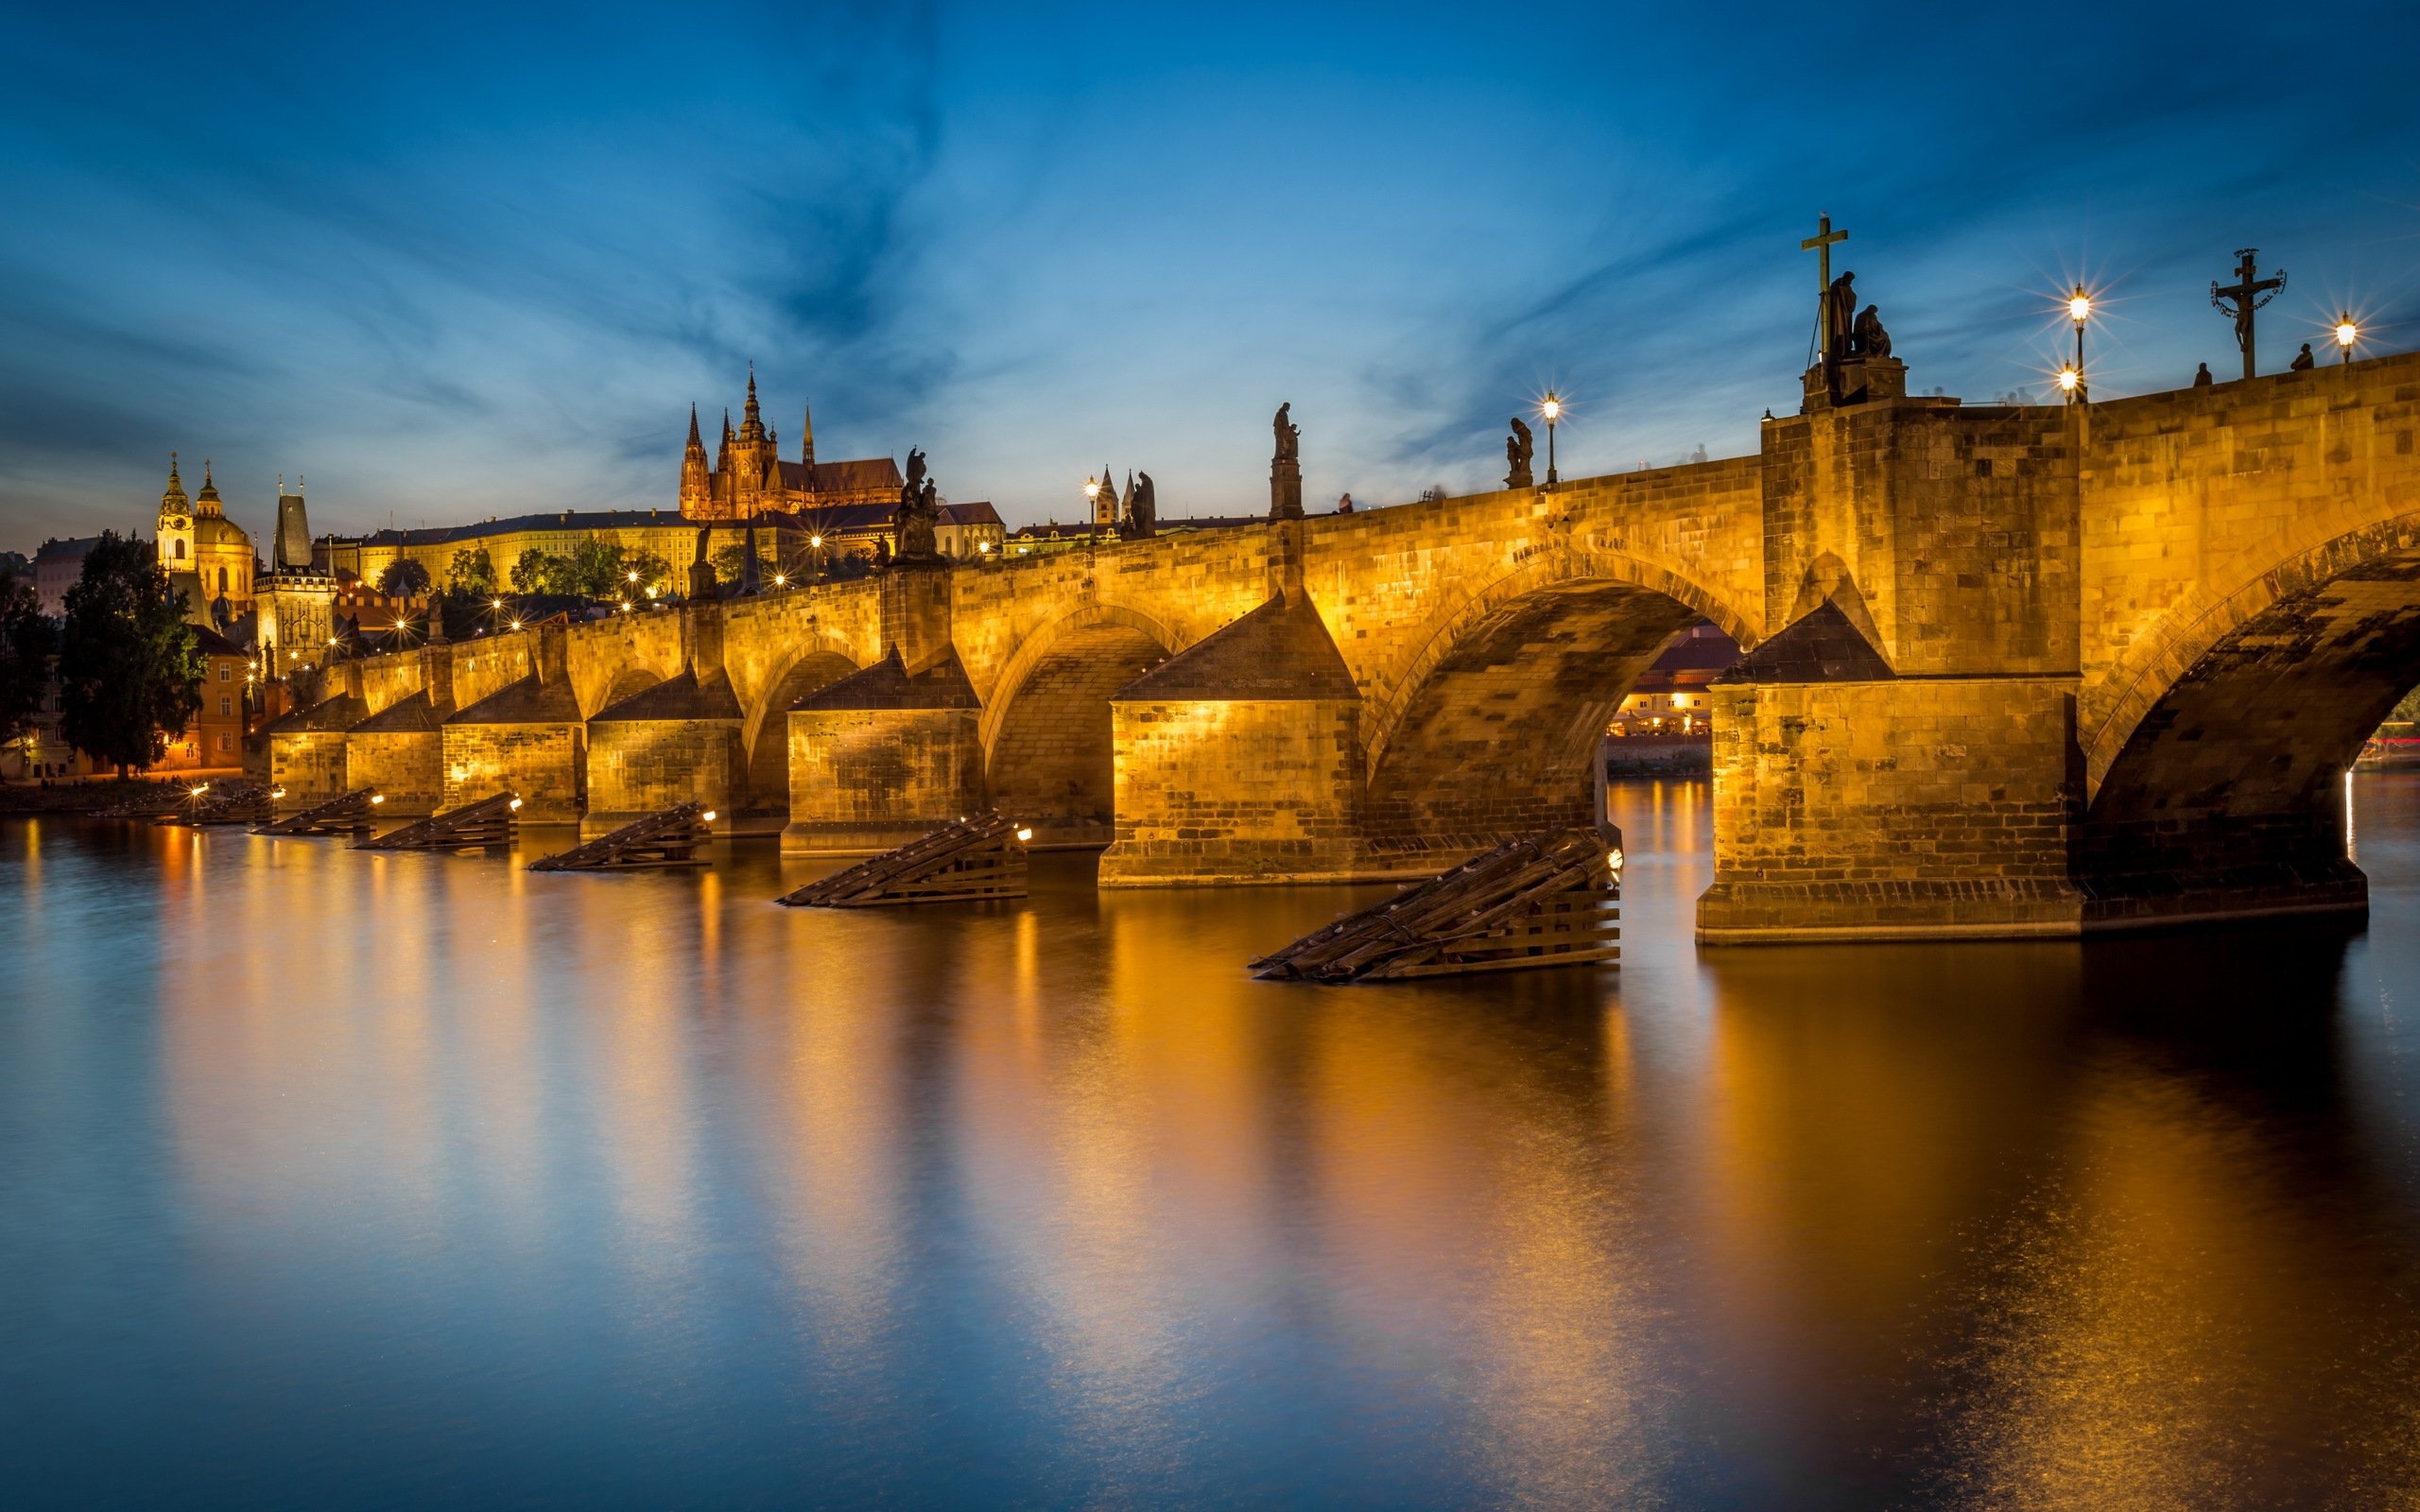 Prague: Czech Republic, The Charles Bridge stands astride the Vltava River. 2560x1600 HD Wallpaper.